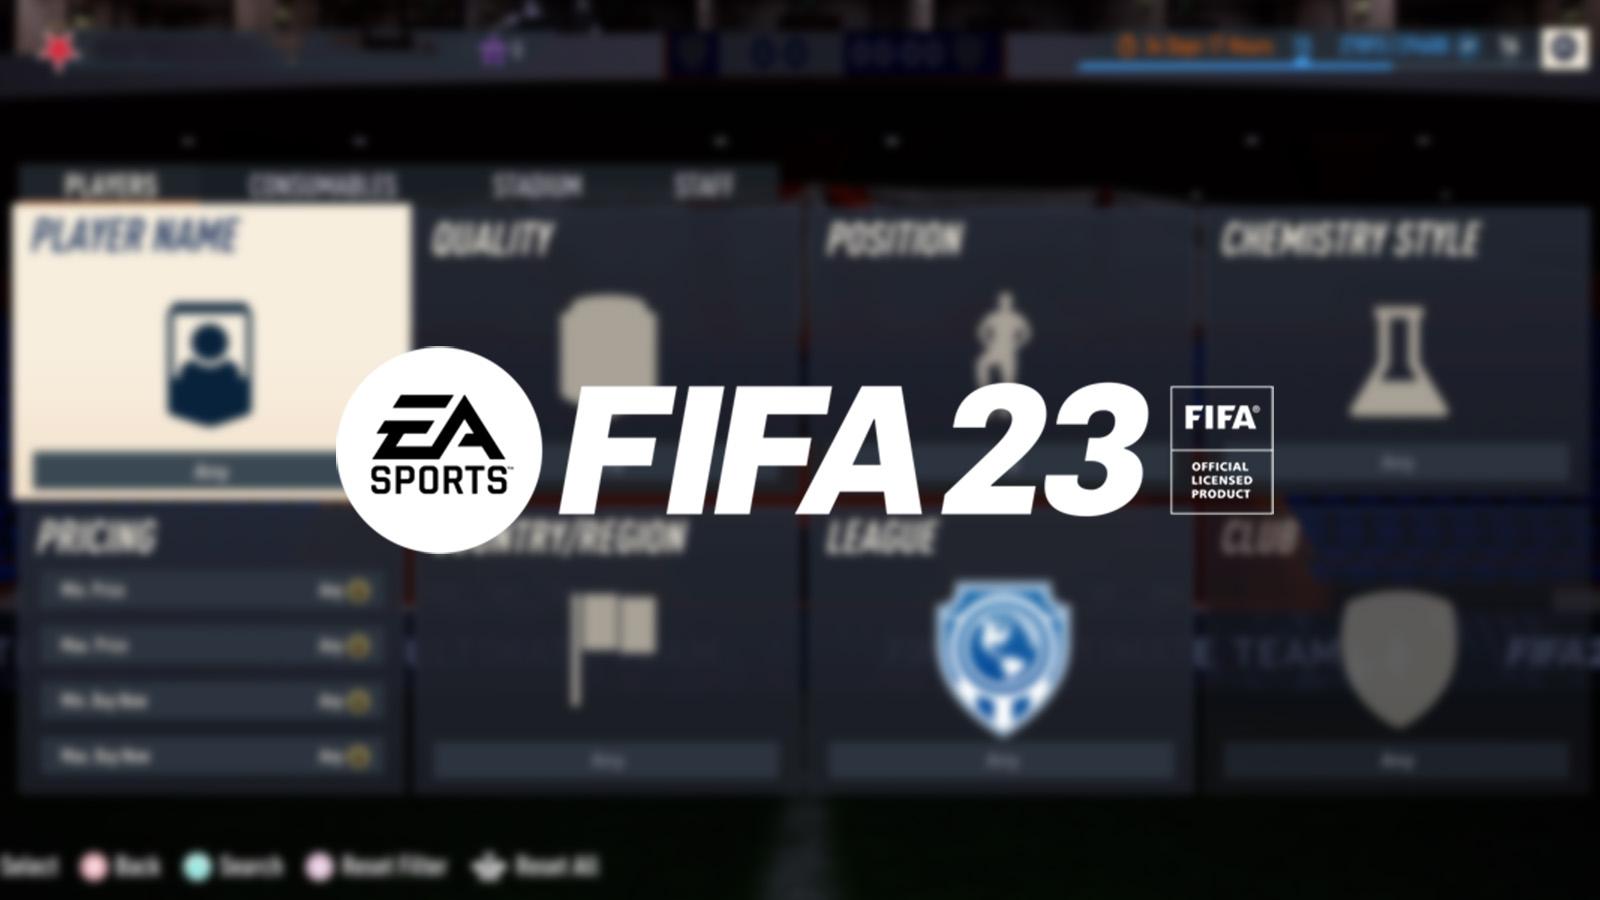 FIFA 23 FUT365 SNIPER BOT TUTORIAL! (WEB APP) 